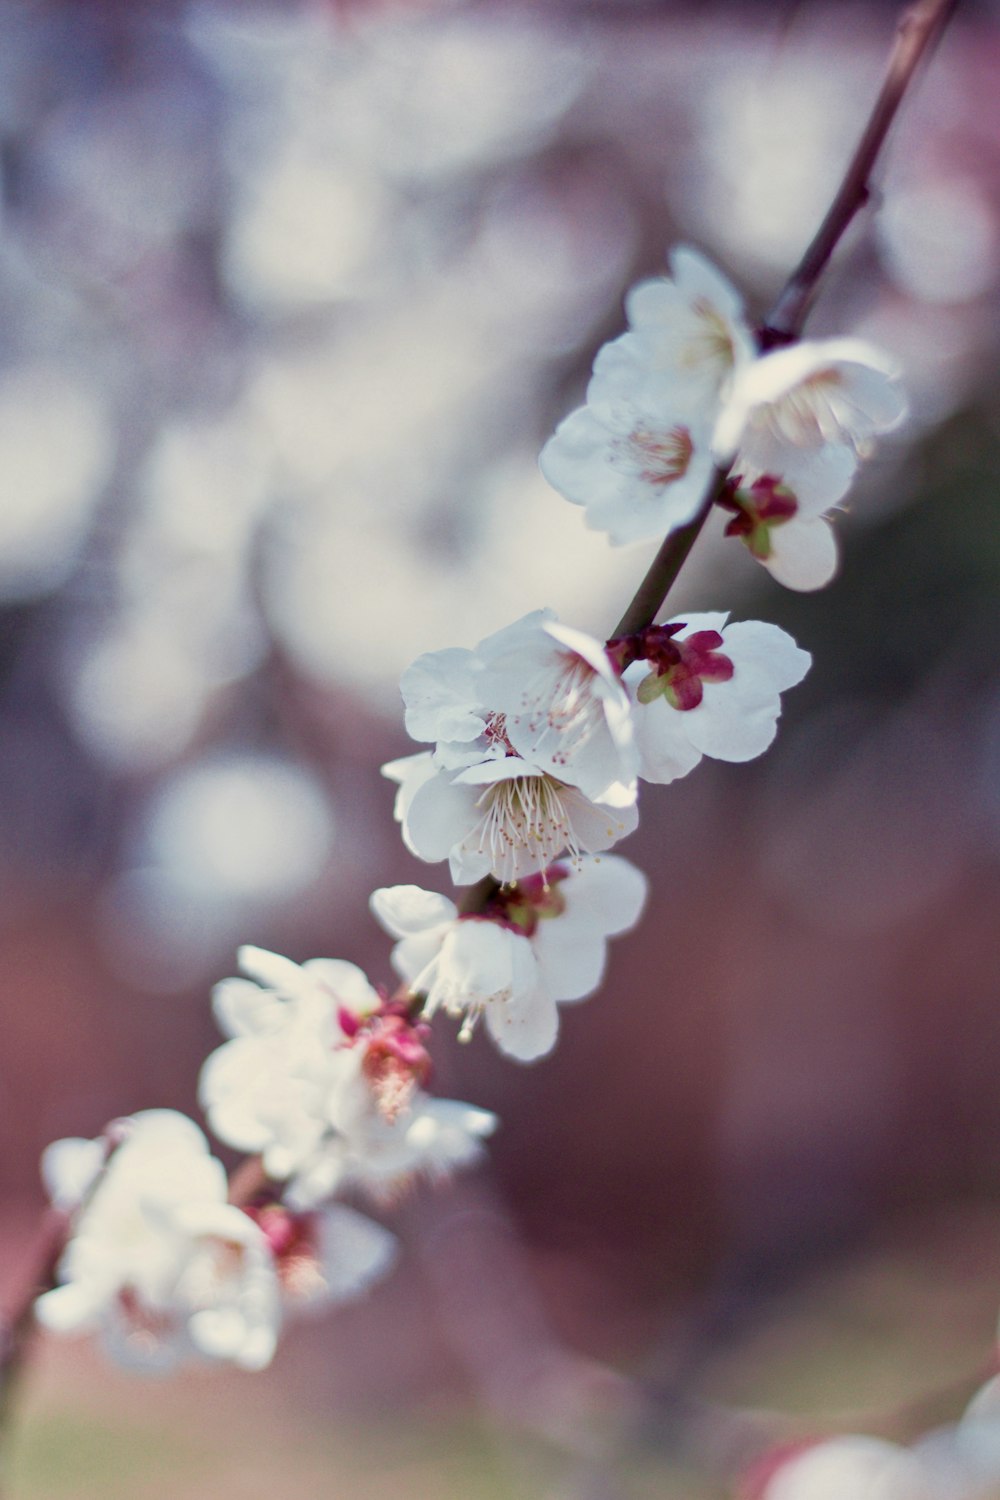 fotografia ravvicinata di fiori di ciliegio bianchi